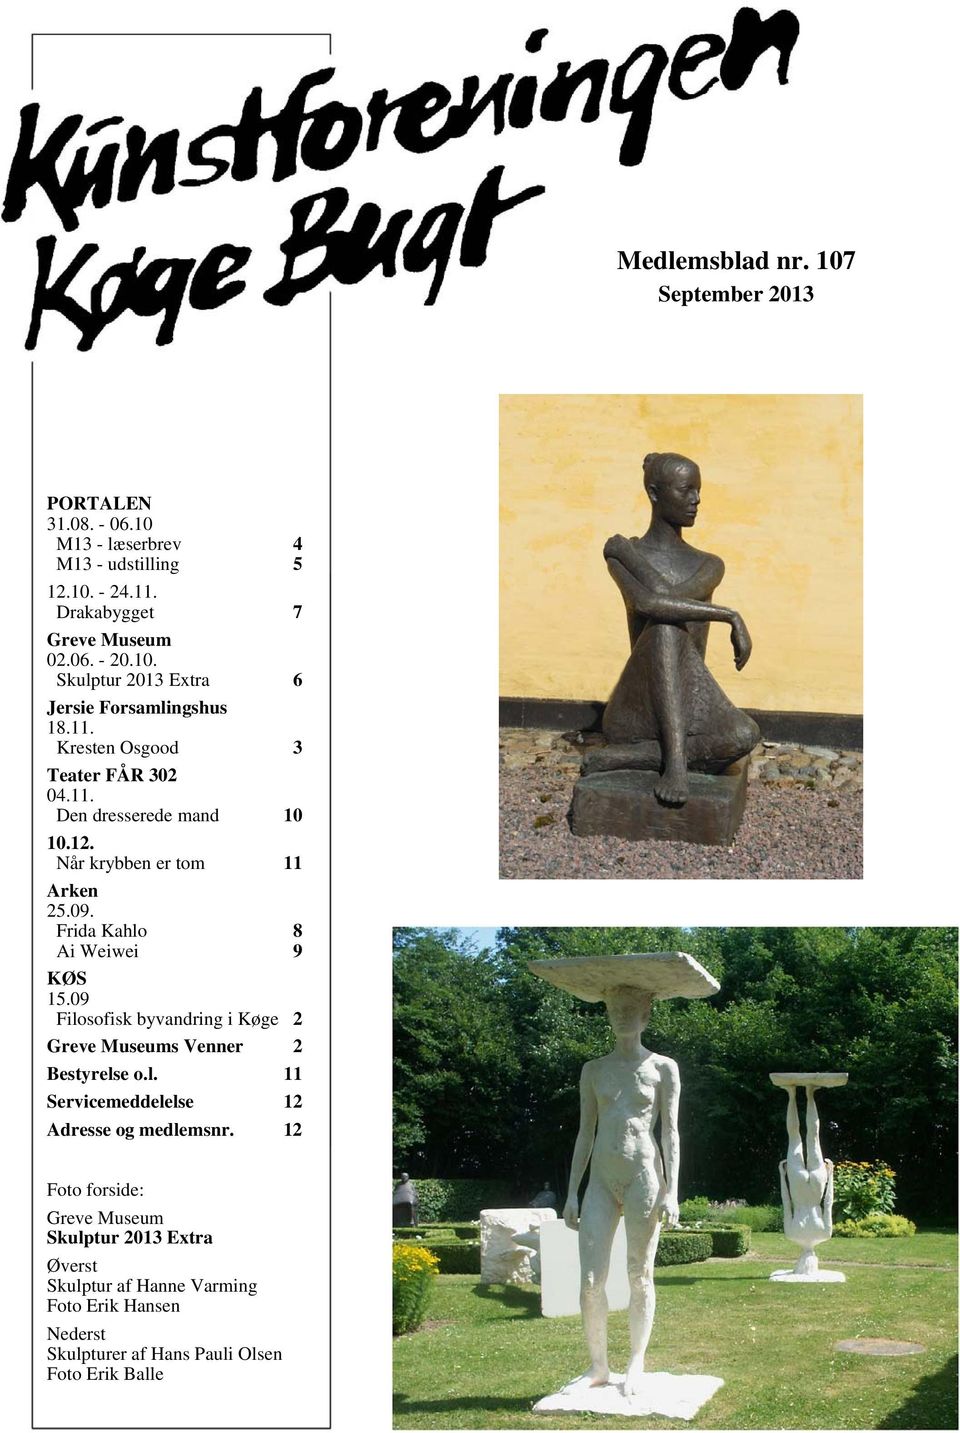 09 Filosofisk byvandring i Køge 2 Greve Museums Venner 2 Bestyrelse o.l. 11 Servicemeddelelse 12 Adresse og medlemsnr.